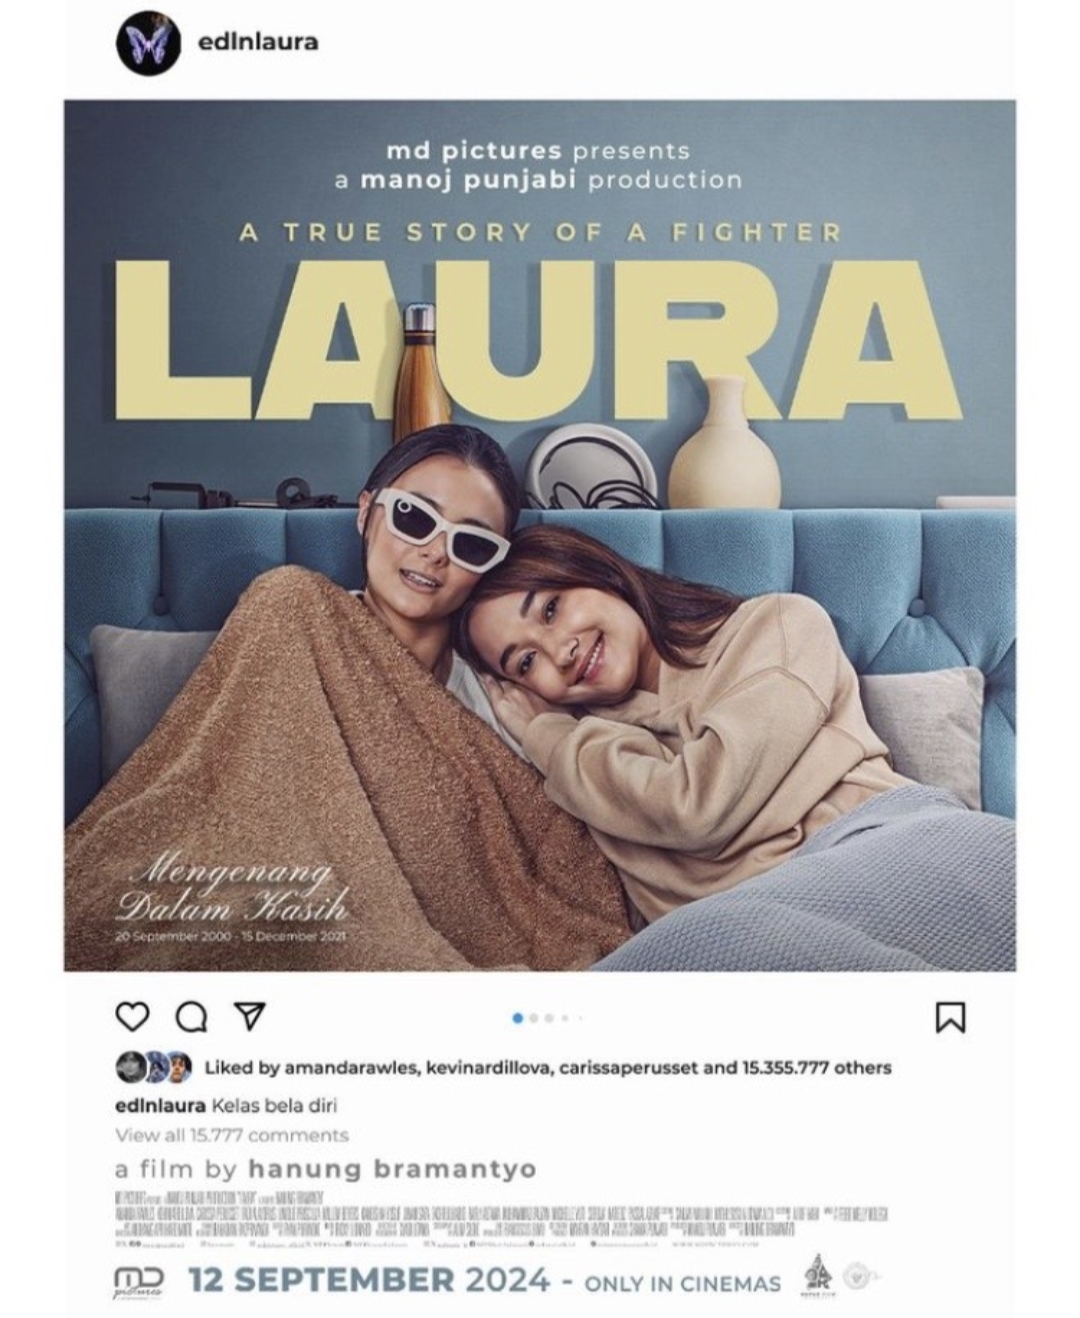 Mengenang Kisah Selebgram Edelenyi Laura, Film Berjudul LAURA Akan Tayang Pada 12 September 2024!